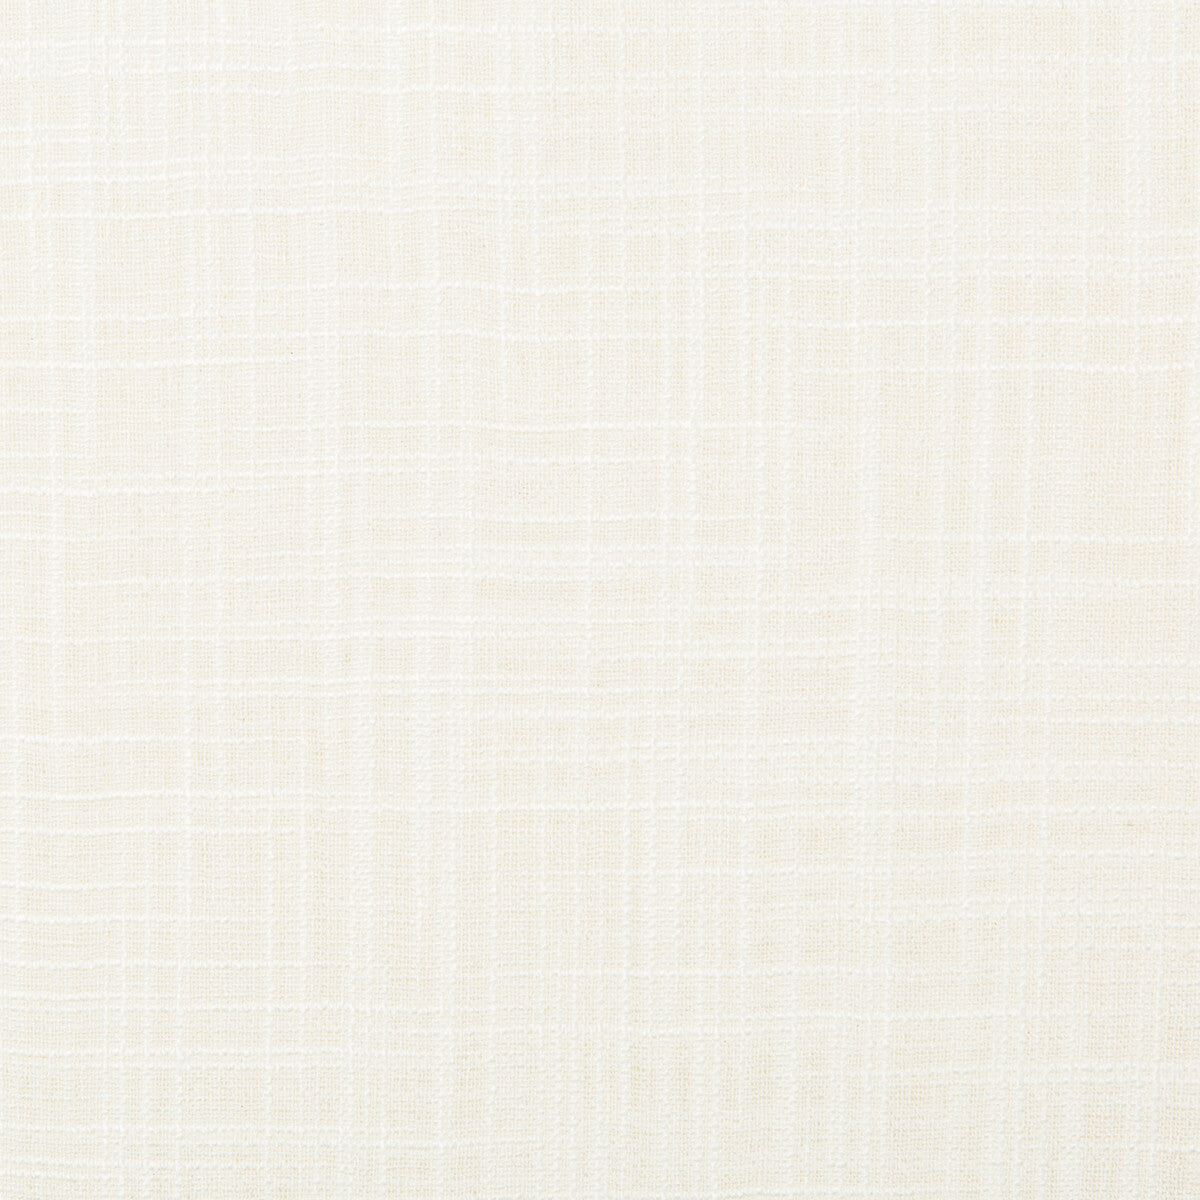 Kravet Basics fabric in 4674-1 color - pattern 4674.1.0 - by Kravet Basics